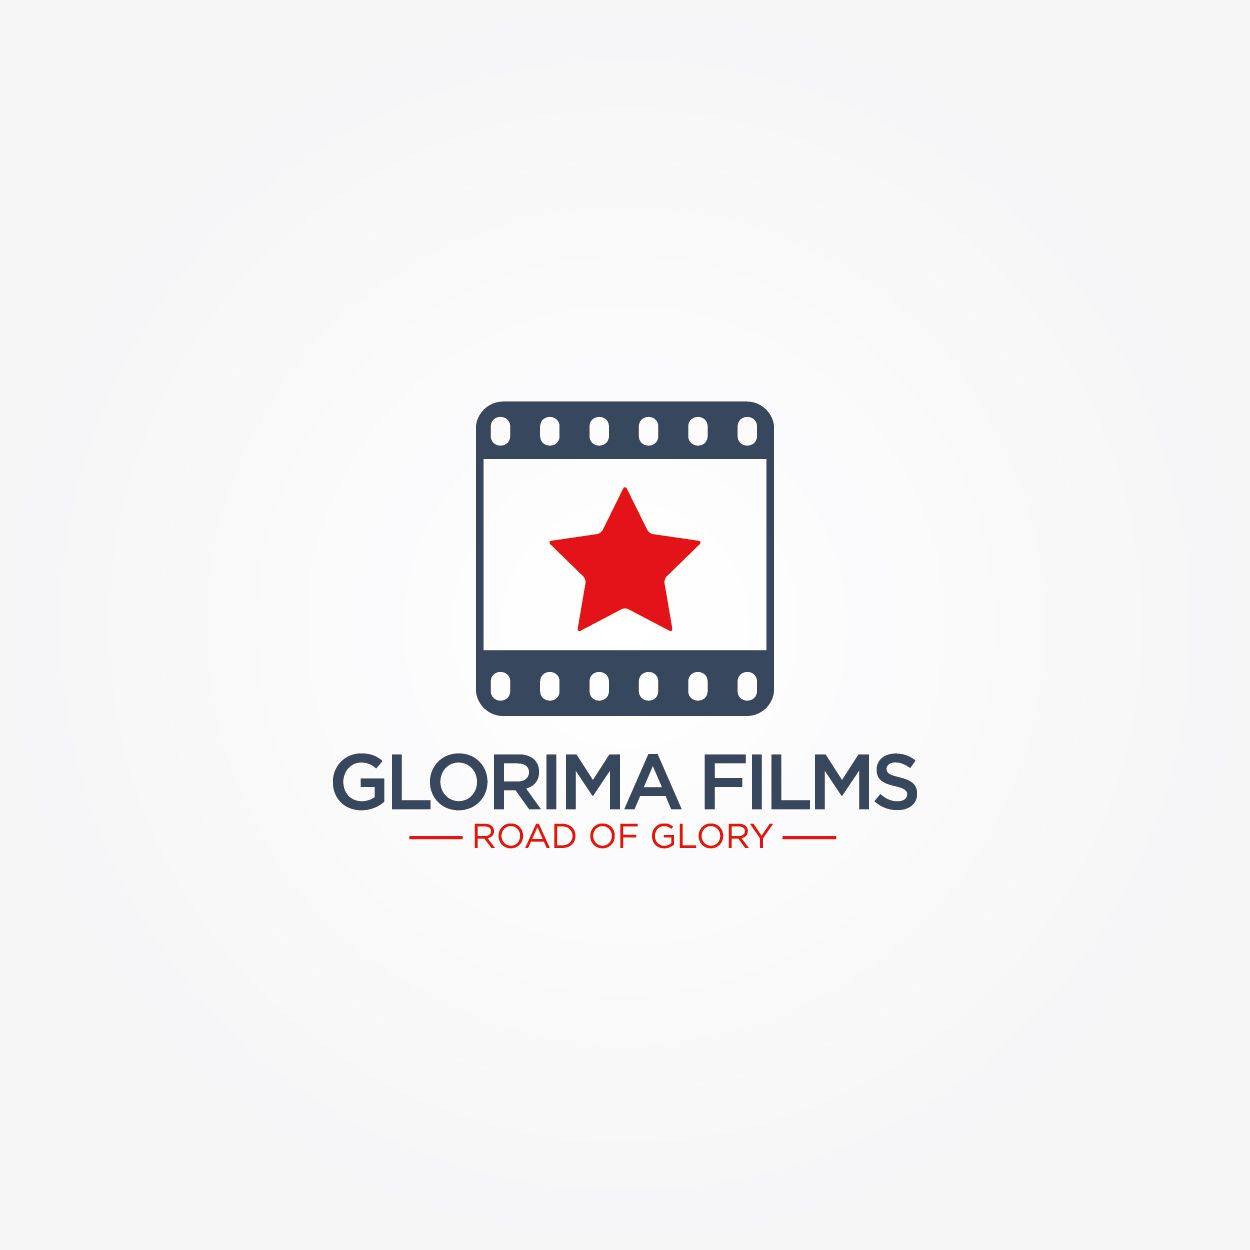 Логотип для кинокомпании Glorima films - дизайнер klyax